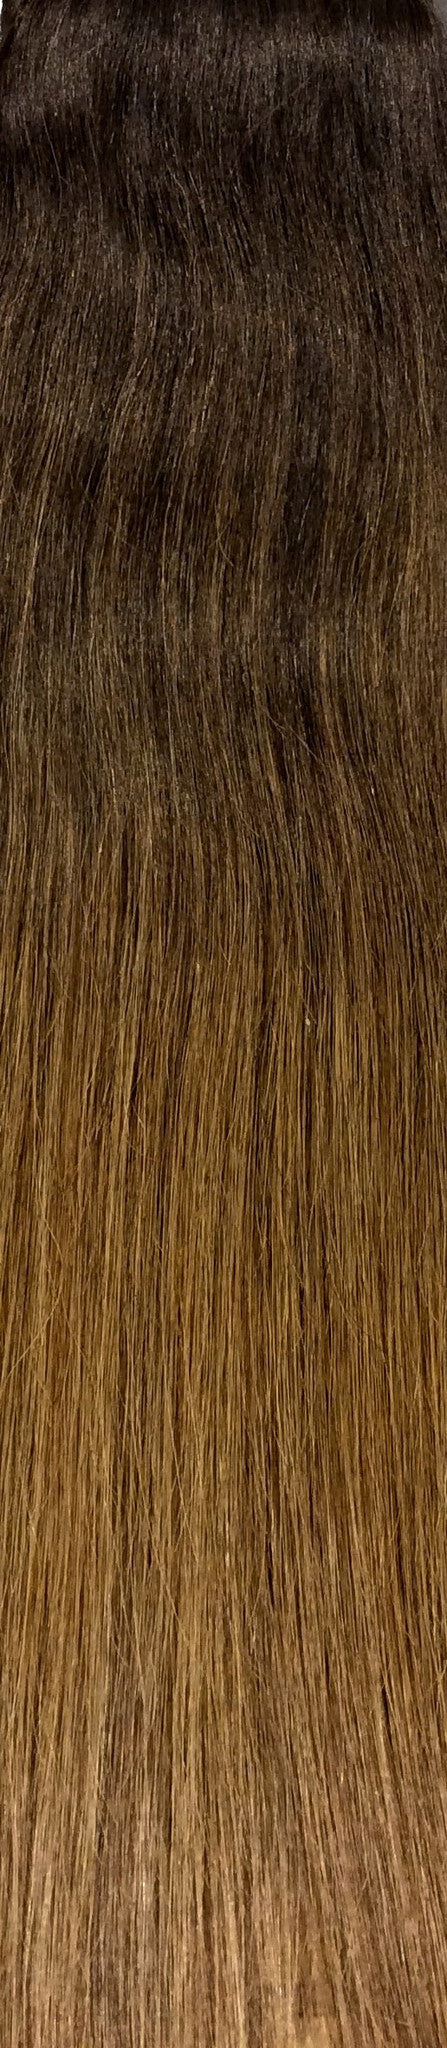 18" 100% Human Hair 7pcs Clip-In Balayage Color B2/6